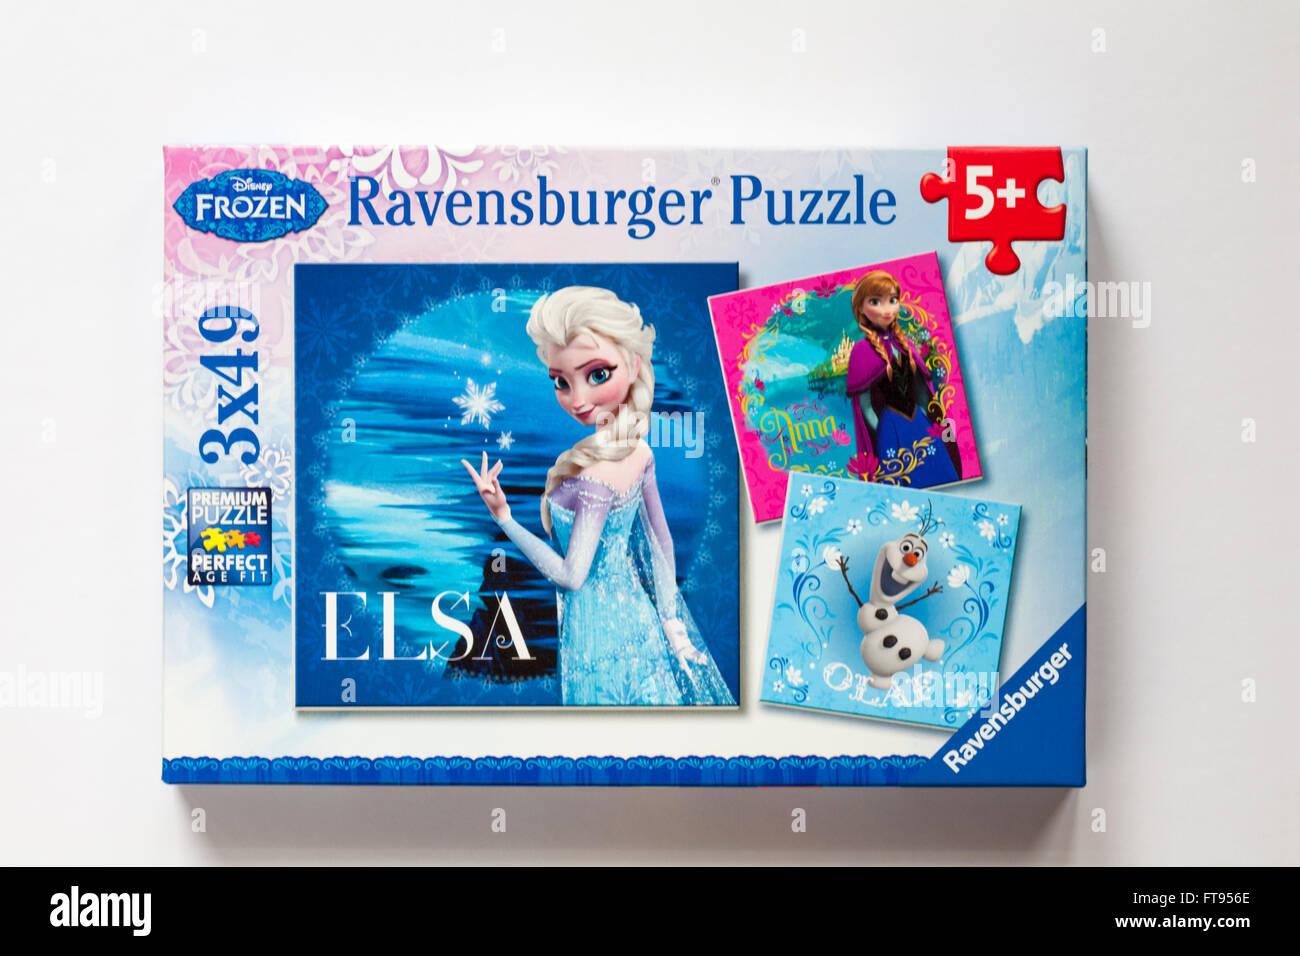 Disney eingefroren Ravensburger Puzzle Puzzle mit drei separaten Rätsel von  Elsa, Anna und Olaf isoliert auf weißem Hintergrund Stockfotografie - Alamy